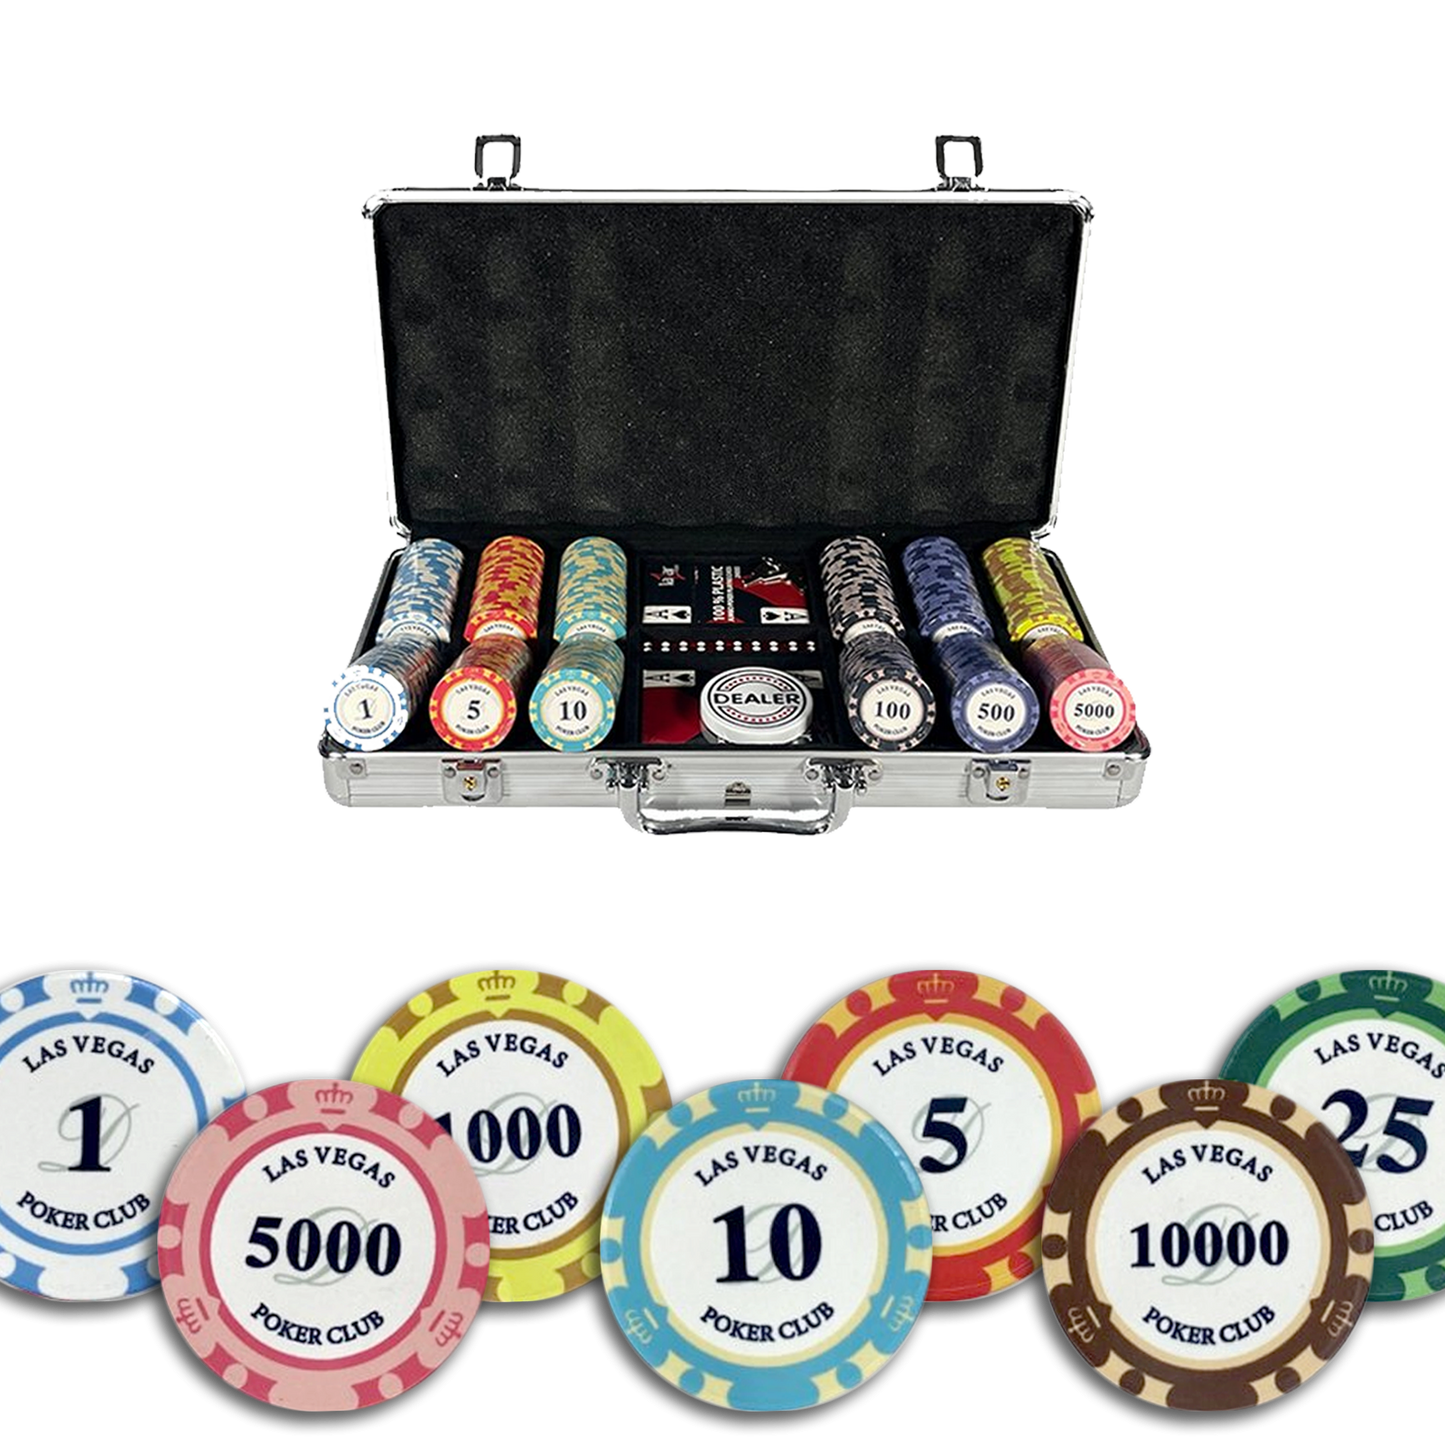 Las Vegas Ceramic 300 Pokerkoffer